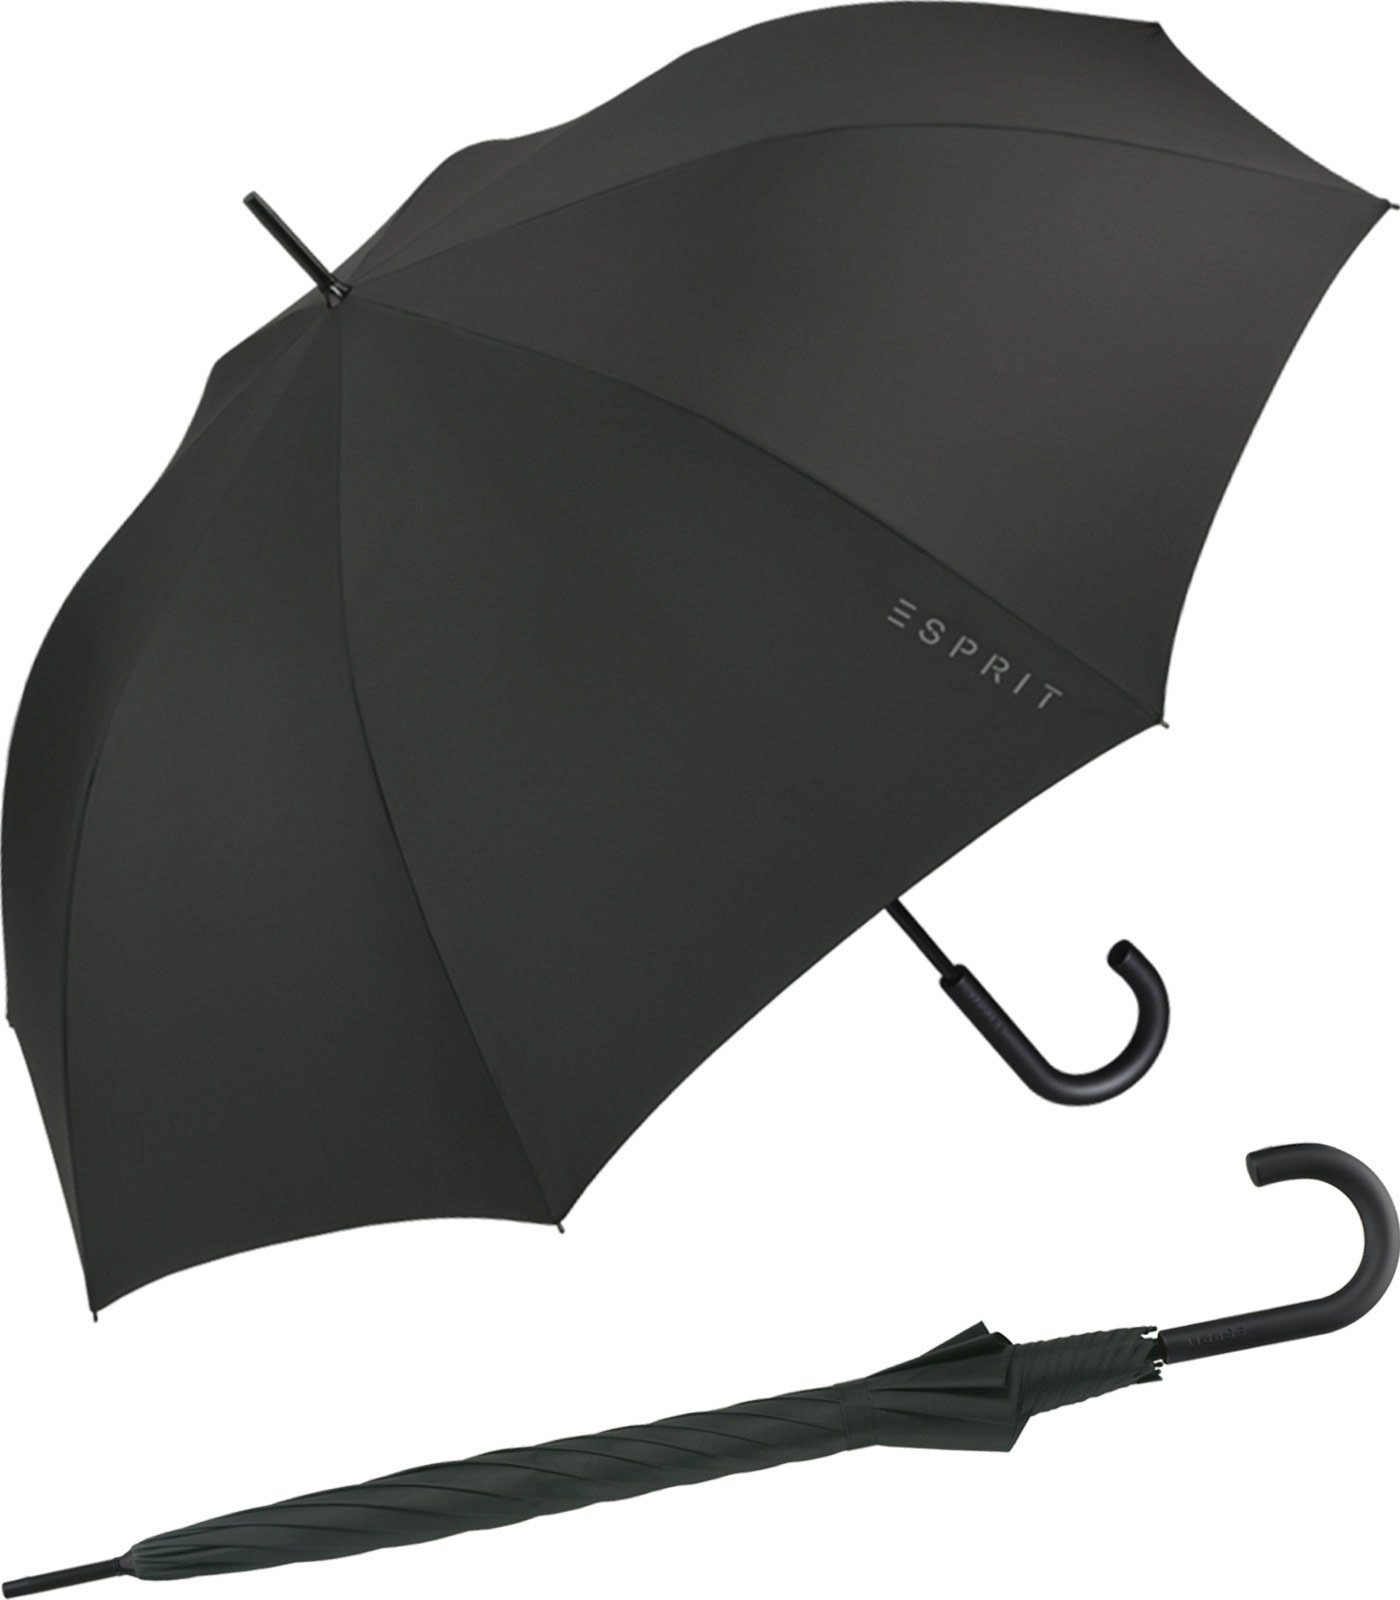 Esprit Stockregenschirm Herren-Schirm mit Automatik Gents stabil leicht, klassisch edel schwarz